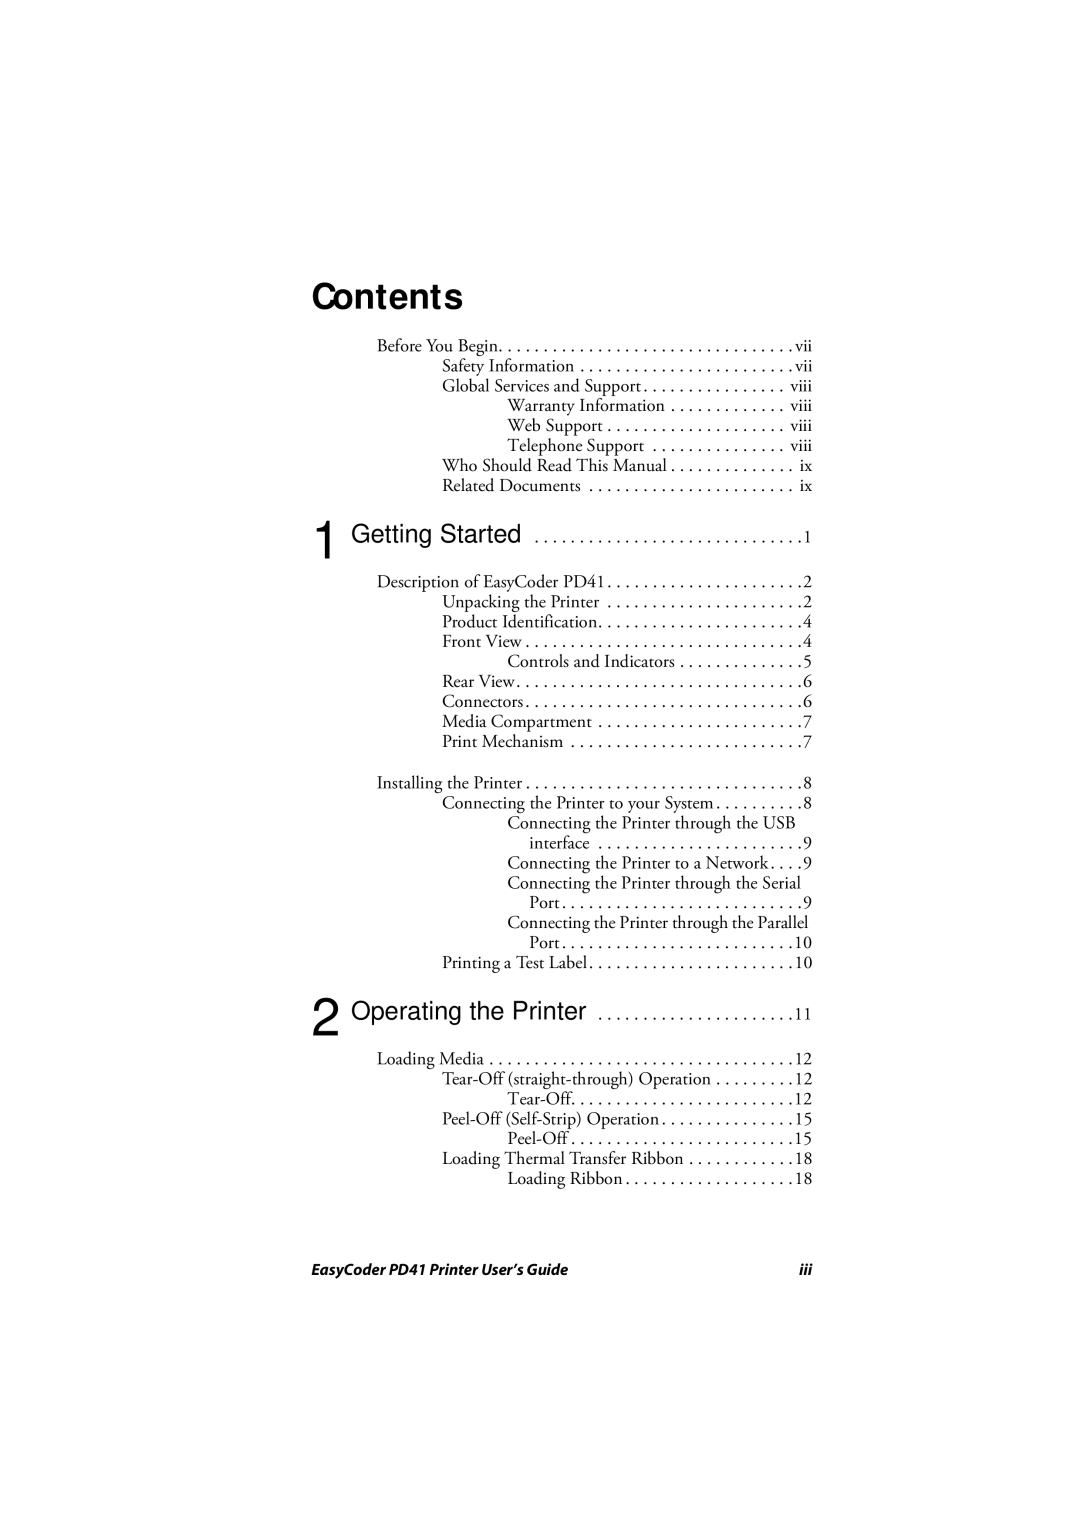 Intermec PD41 manual Contents 